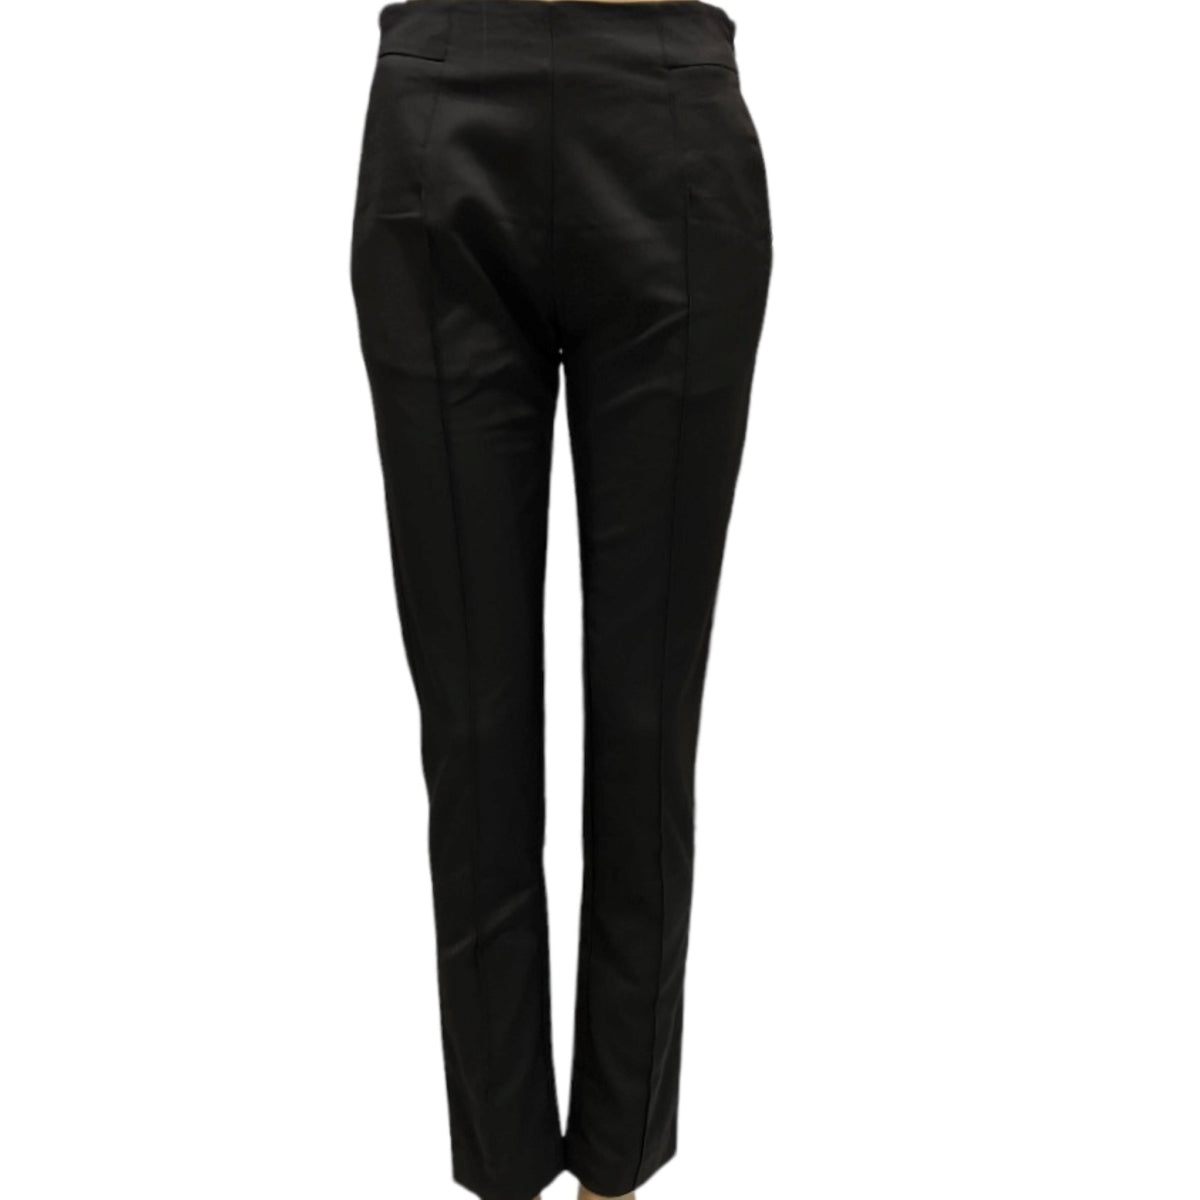 Un beau pantalon classique et ajusté de la marque Kessley Fasion. Le pantalon Kessley procurera un style décontracté et moderne à votre garde-robe. Avec sa fermeture éclair invisible sur le côté, vous profiterez d'un look élégant et sans effort, sans compromettre votre confort.